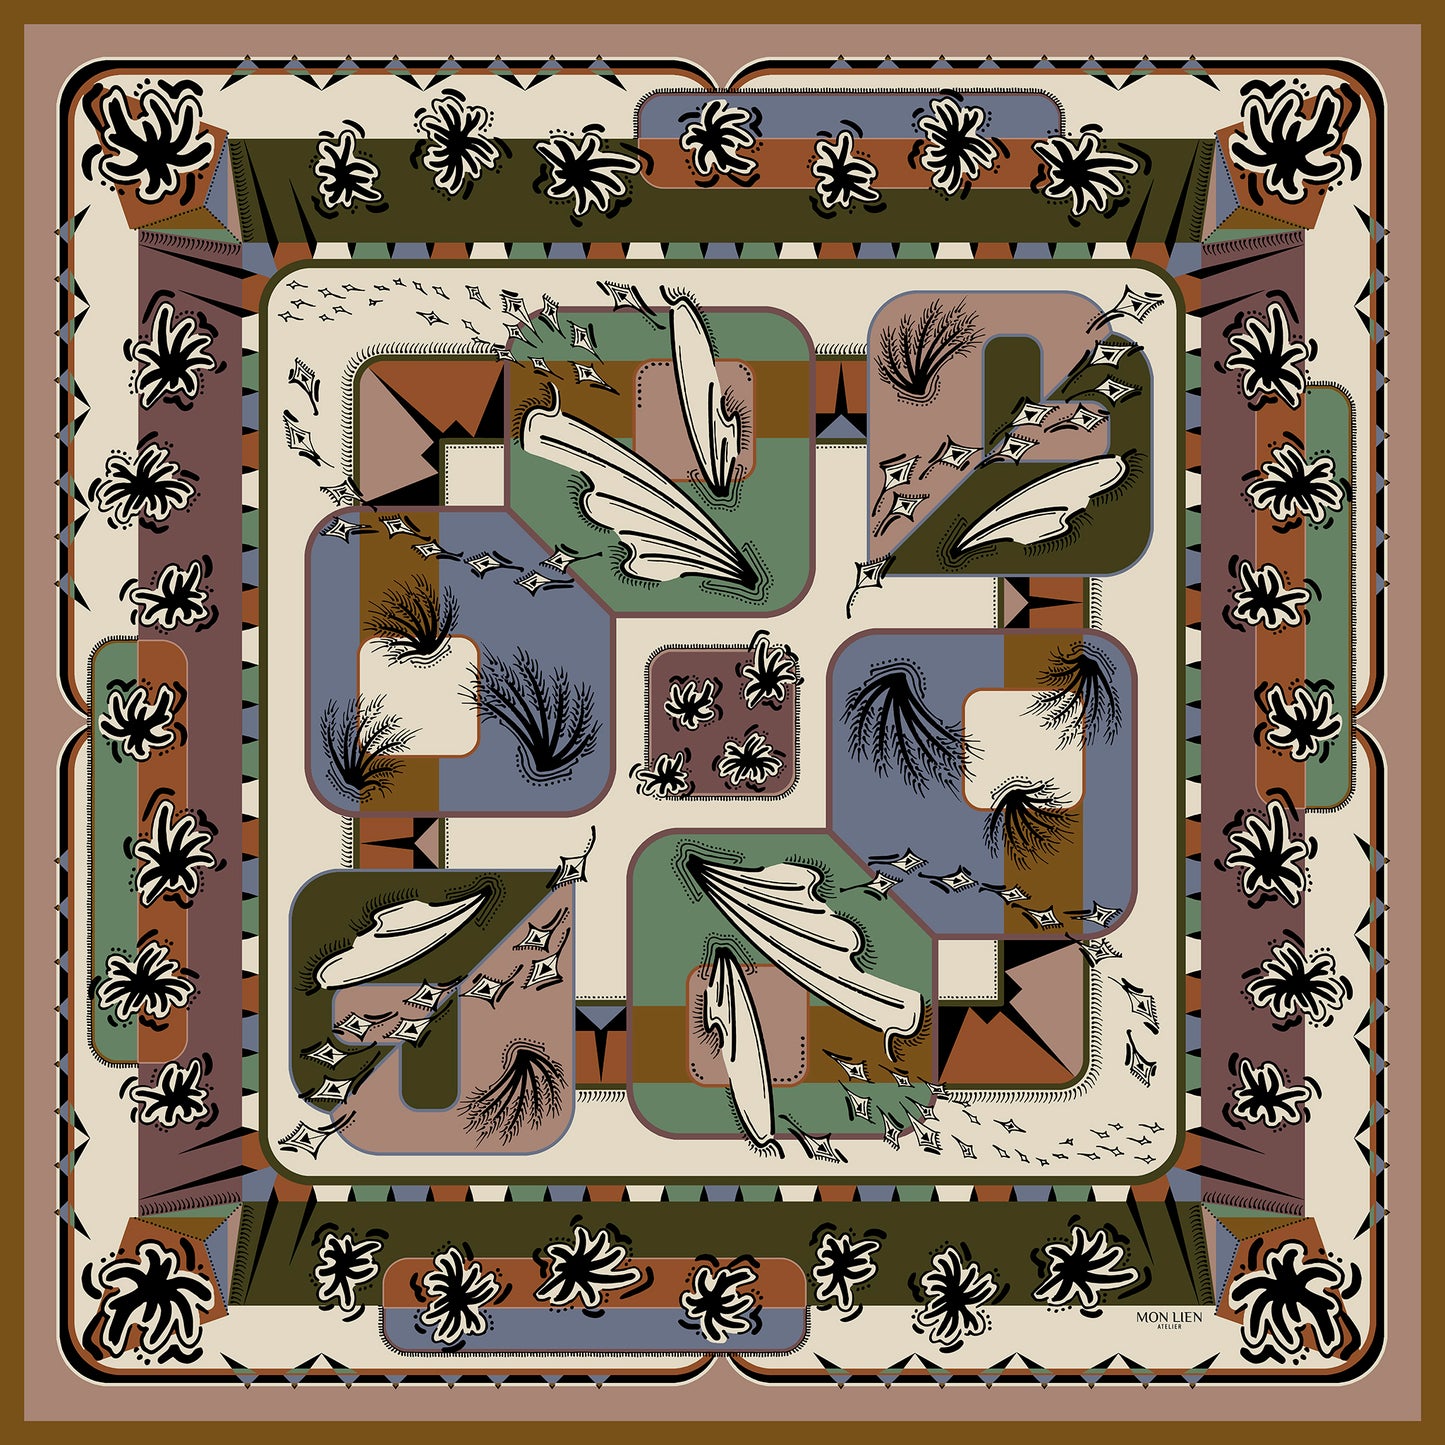 foulard dimensione versatile aperto in seta con stampa fiori, ali, geometrie di colore terra, avorio, verde, azzurro e nero